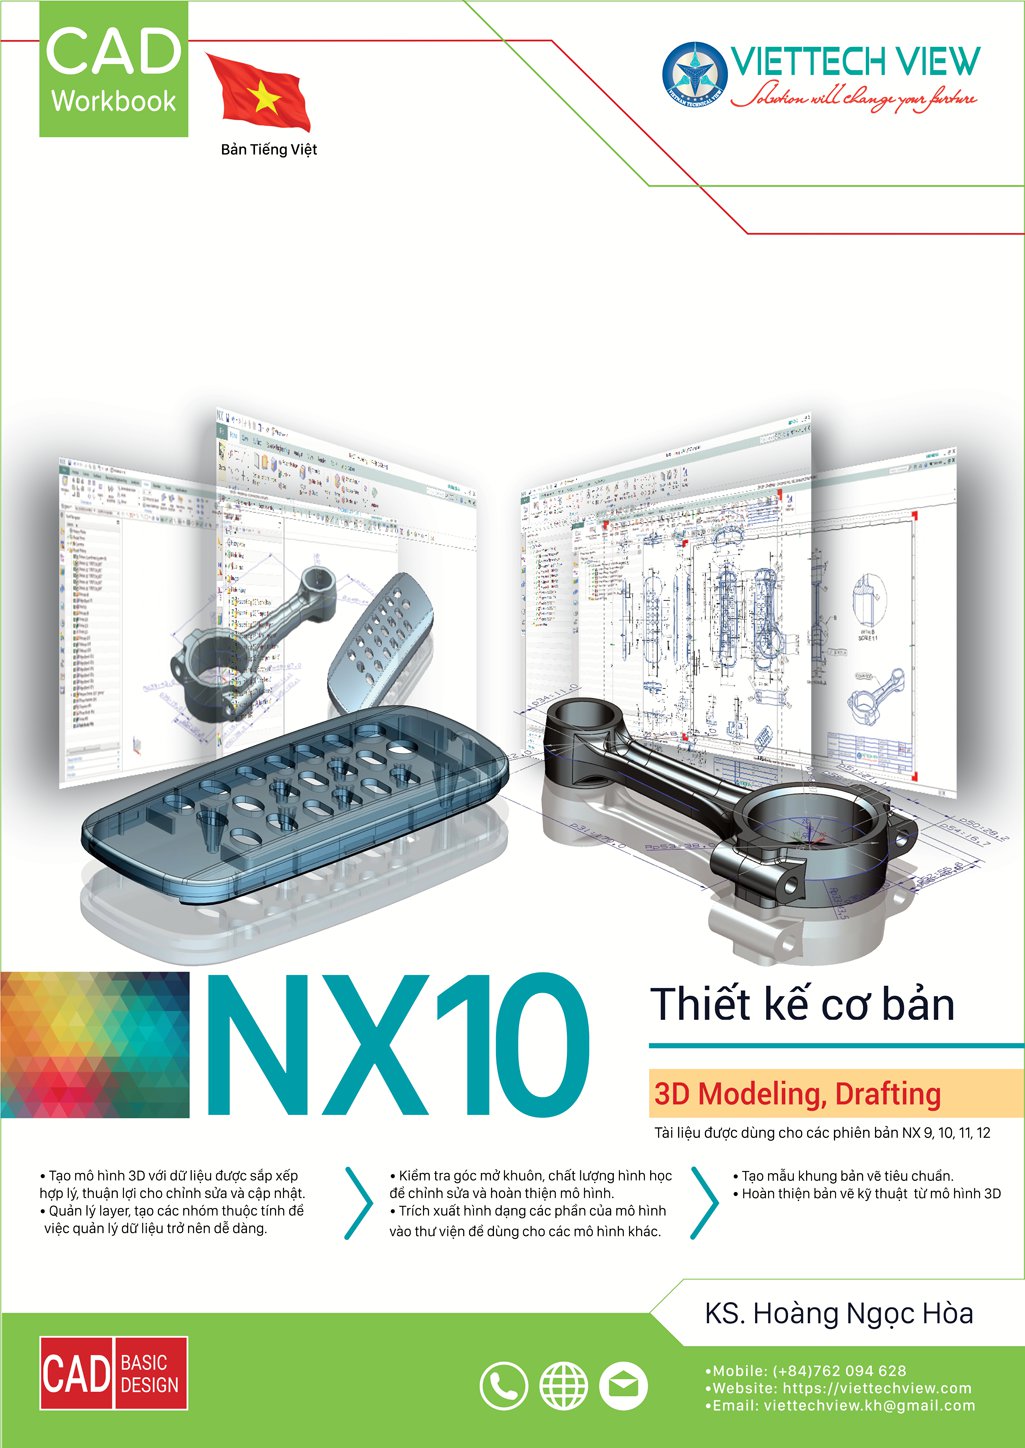 Nâng cao sự hiểu biết của bạn về thiết kế cơ bản NX và tạo ra những bản thiết kế tuyệt vời. Tạo ra những sản phẩm chất lượng và tiên tiến hơn với sự trợ giúp của hệ thống thiết kế cơ bản NX.